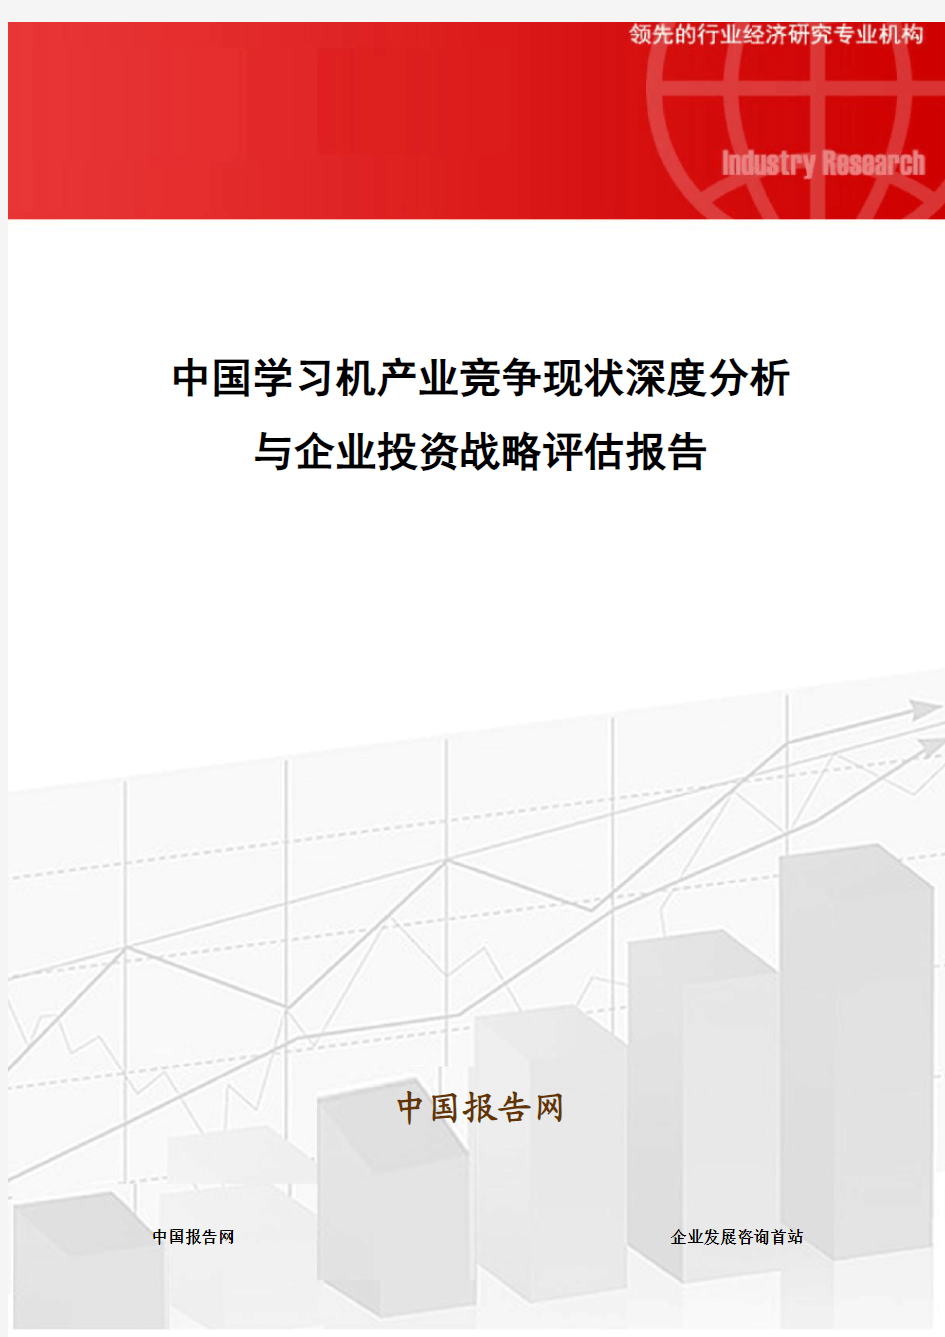 中国学习机产业竞争现状深度分析与企业投资战略评估报告